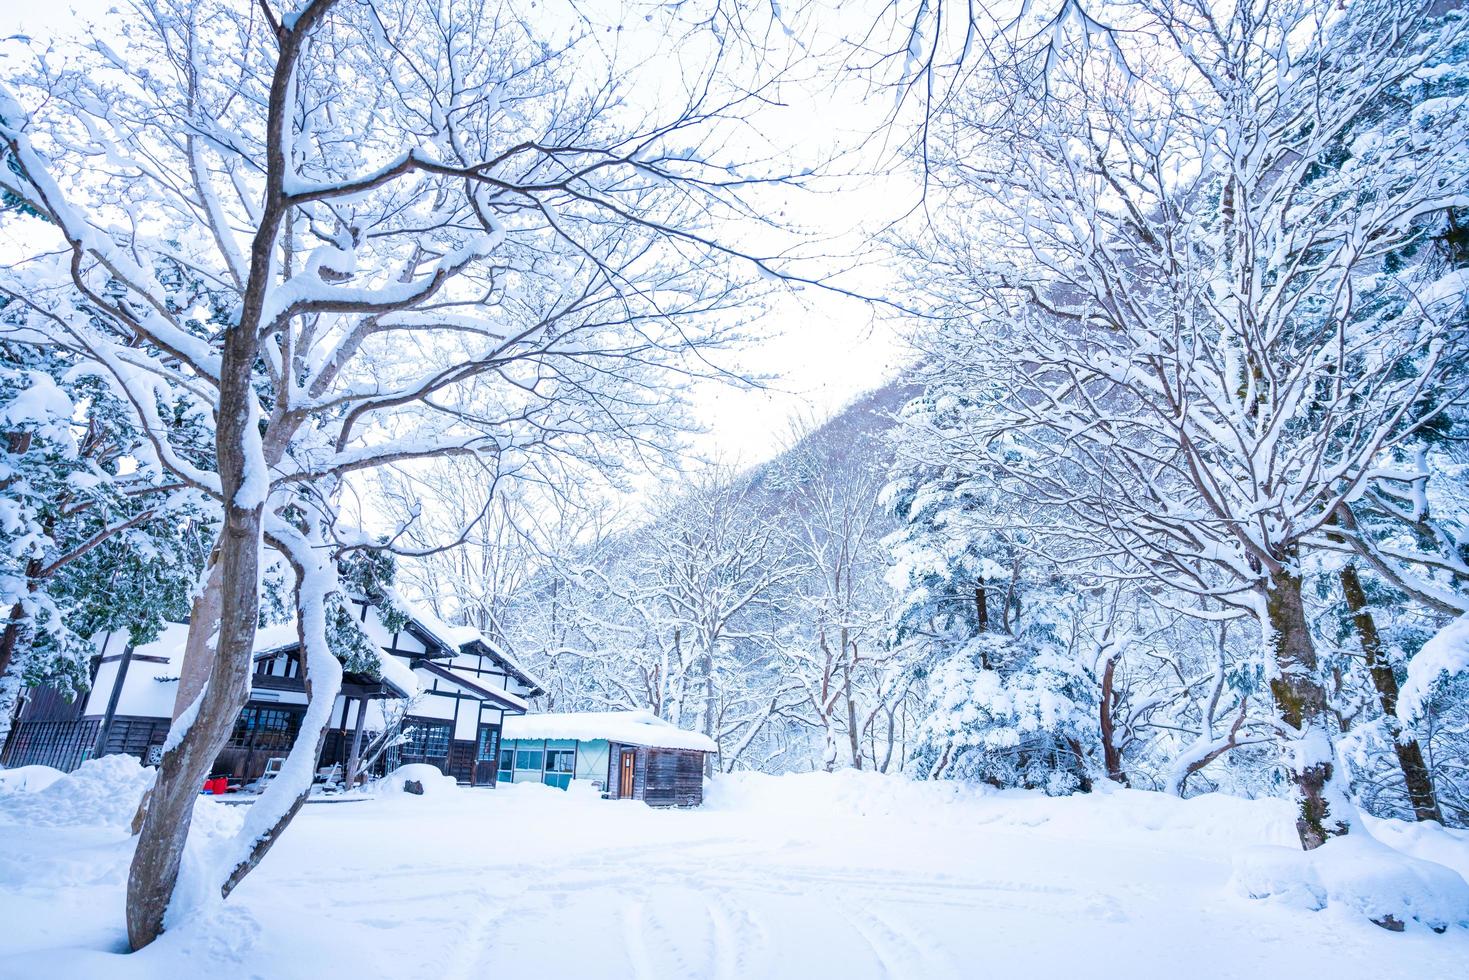 zwaar sneeuw Bij hoi Nee sato dorp in tochigi prefectuur, nikko stad, Japan foto